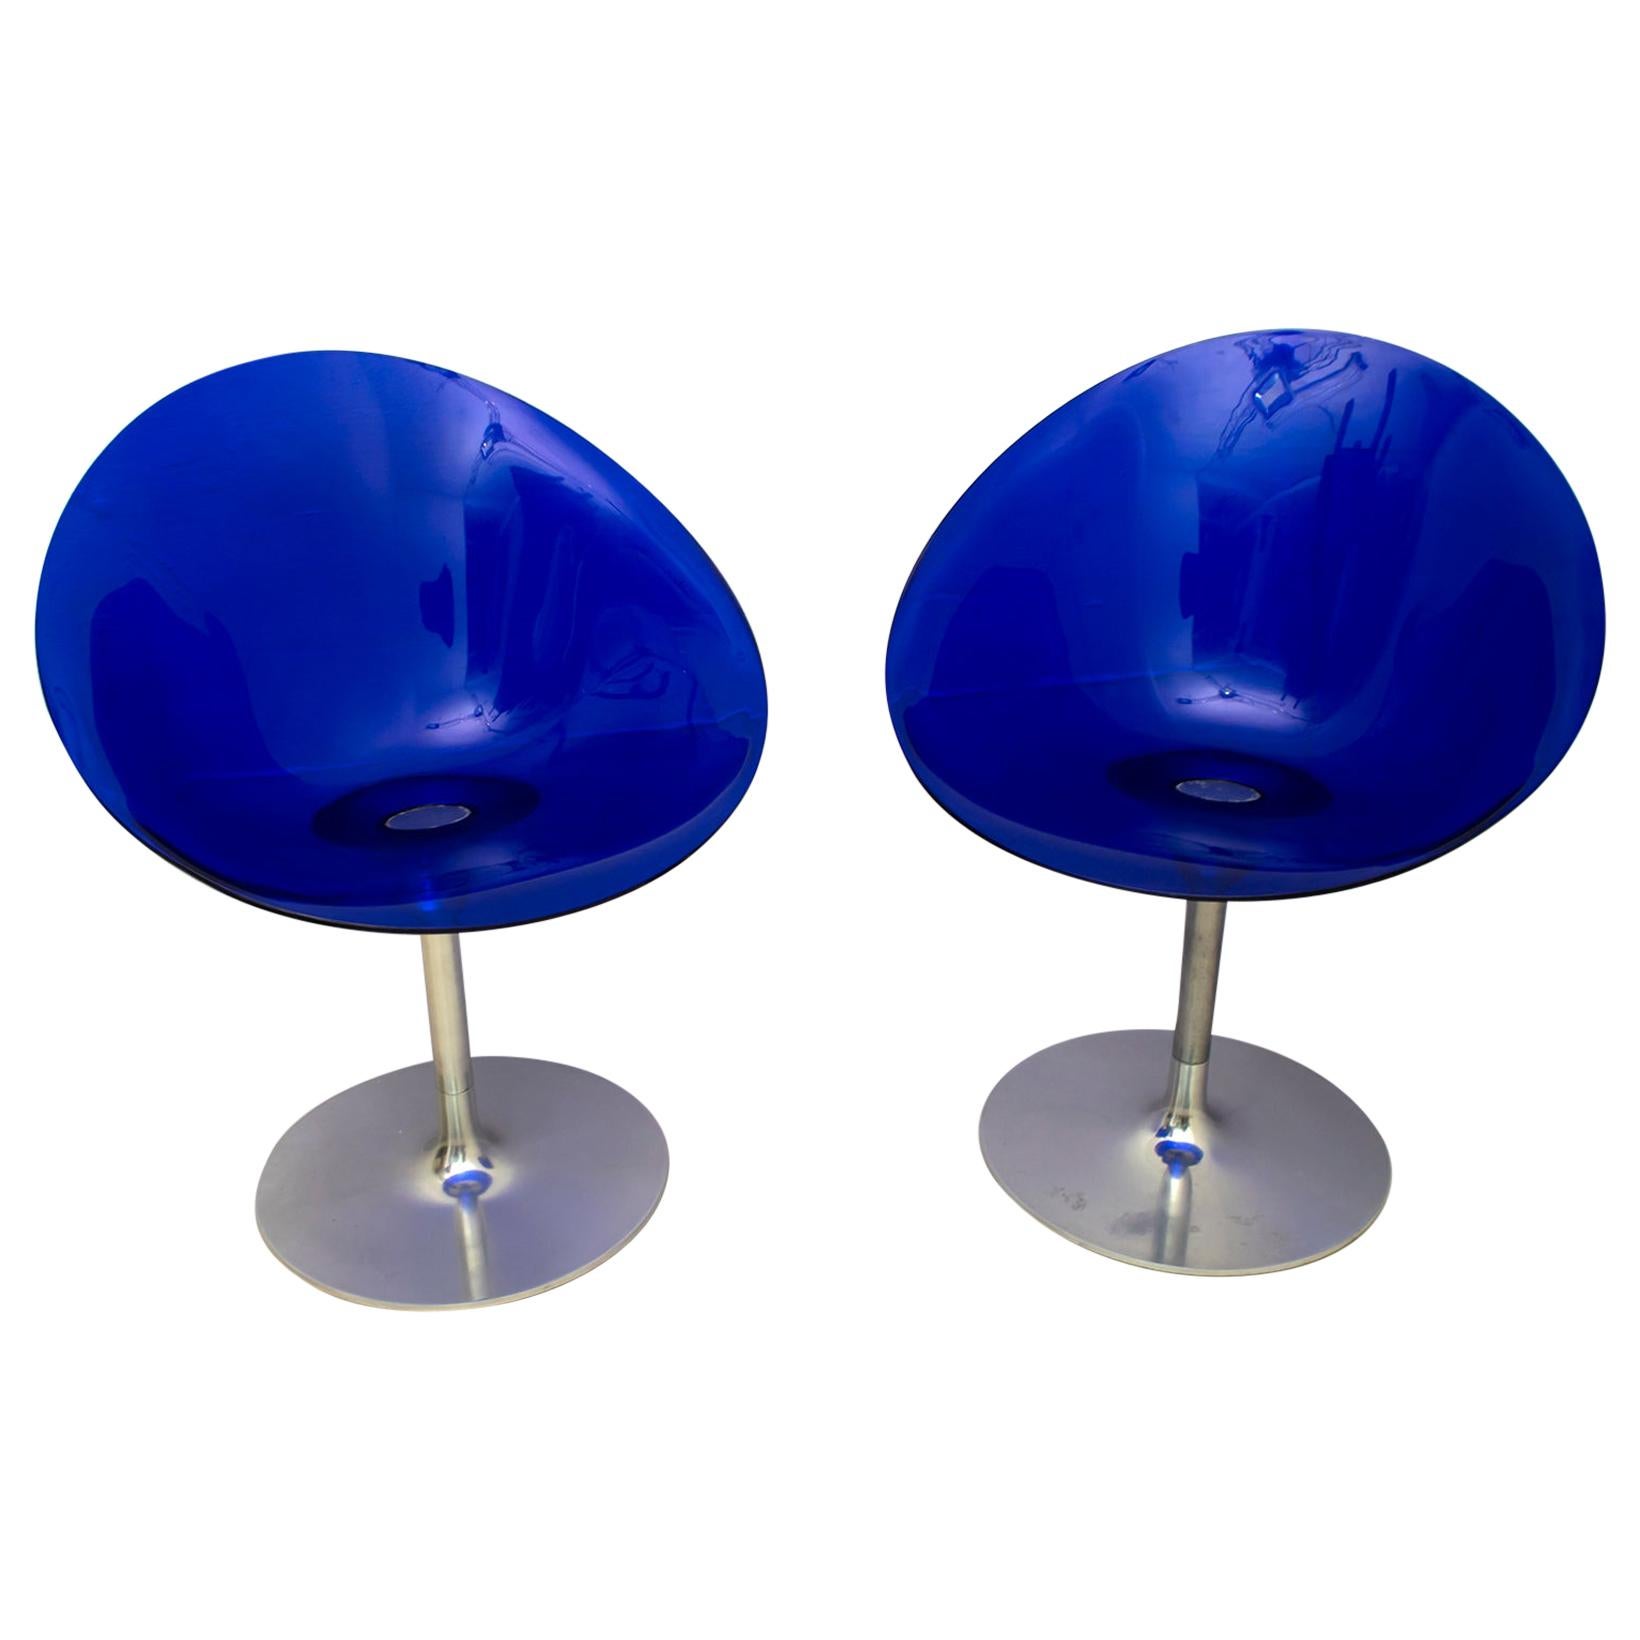 Philippe Starck for Kartell Blue Lucite Eros S Swivel Italian Chairs